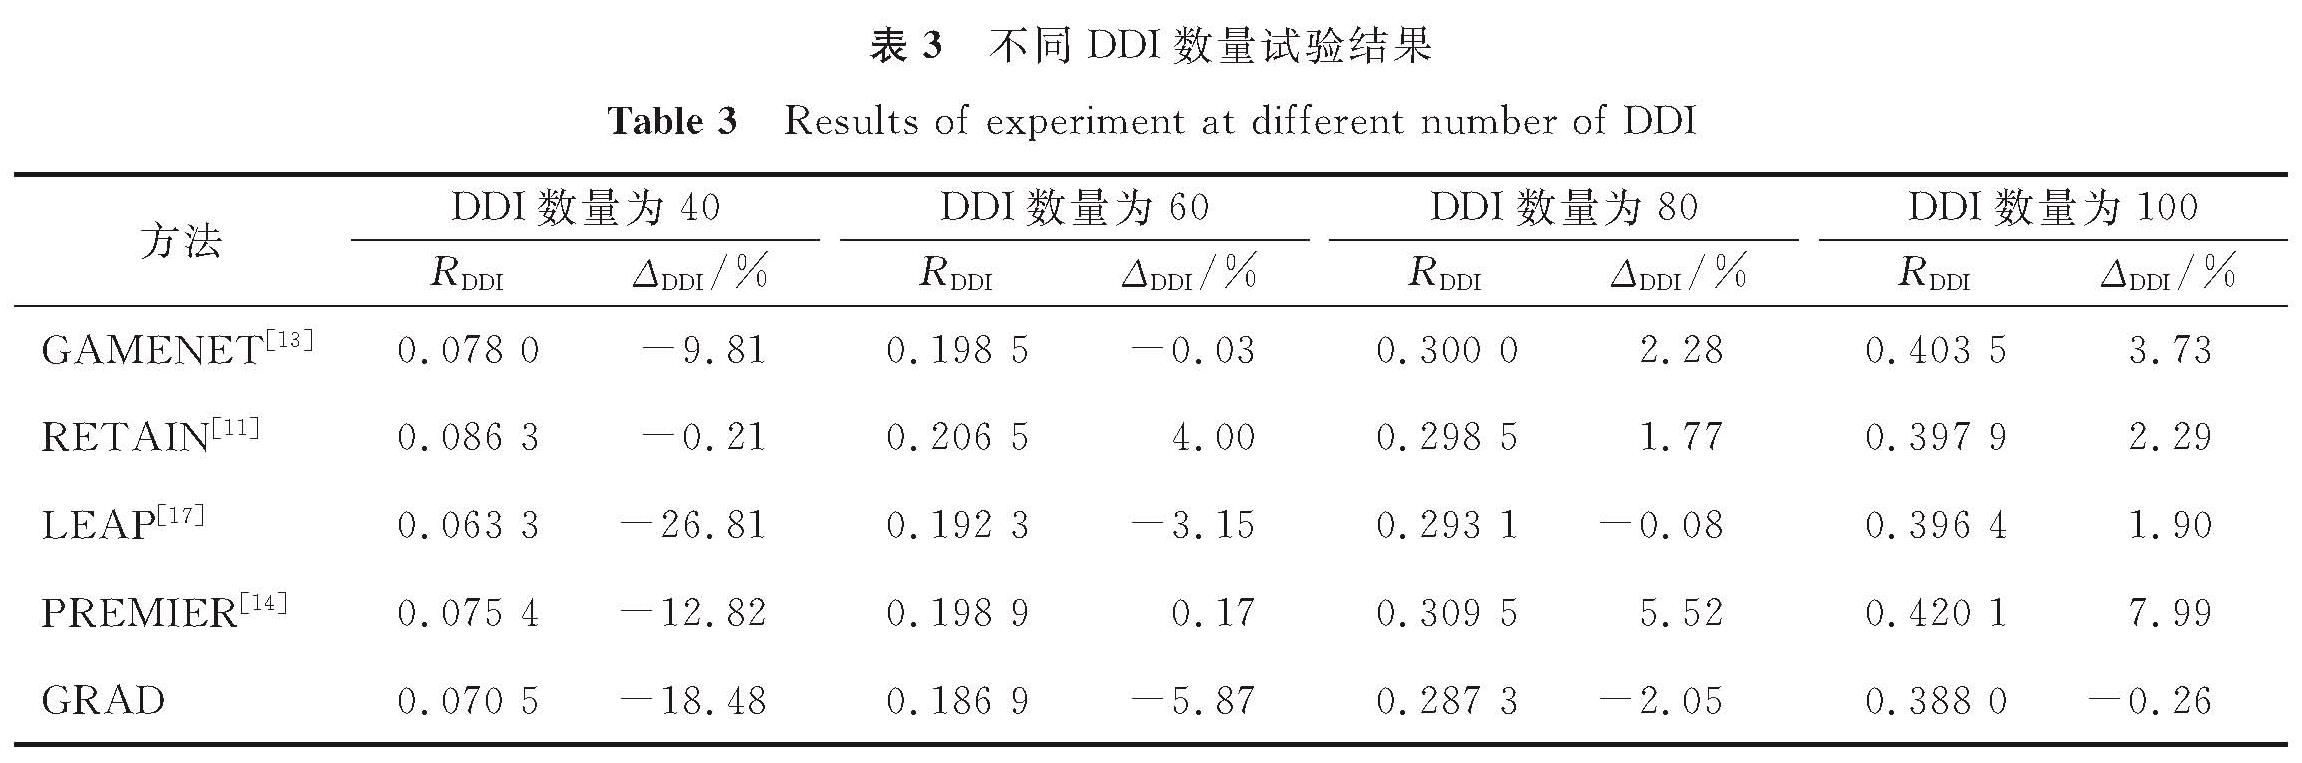 表3 不同DDI数量试验结果<br/>Table 3 Results of experiment at different number of DDI